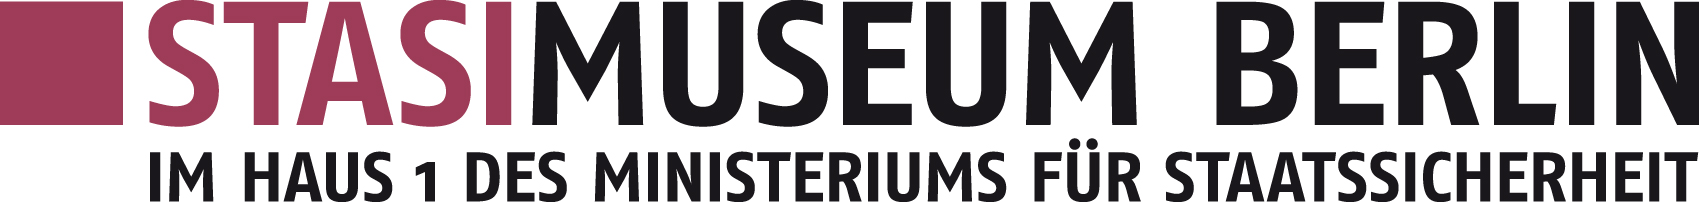 Logo Stasimuseum